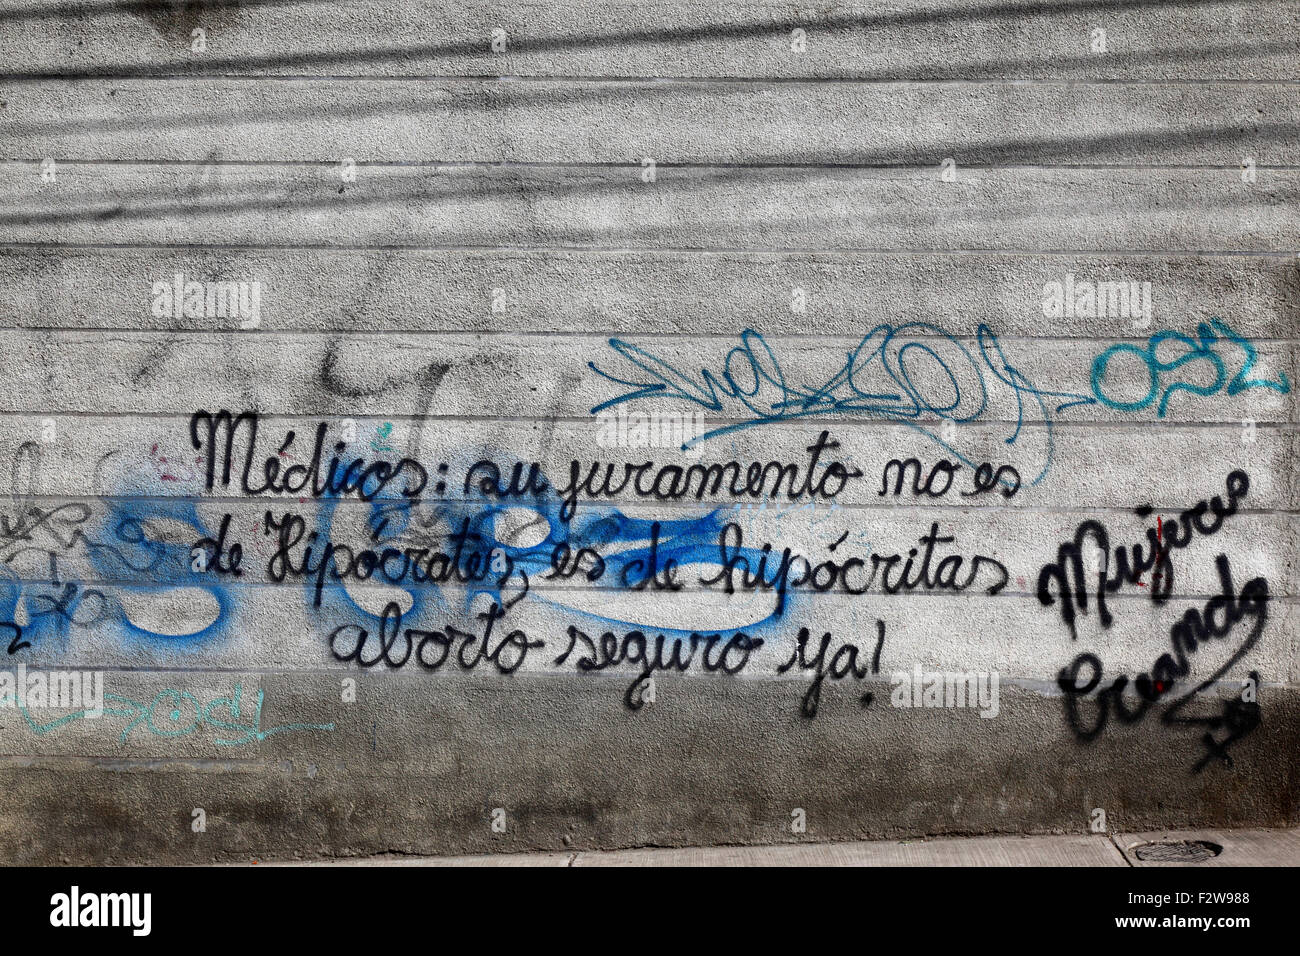 Graffiti sur le mur exigeant le droit à l'avortement pour les femmes par le groupe féministe Mujeres Creando, la Paz, Bolivie Banque D'Images